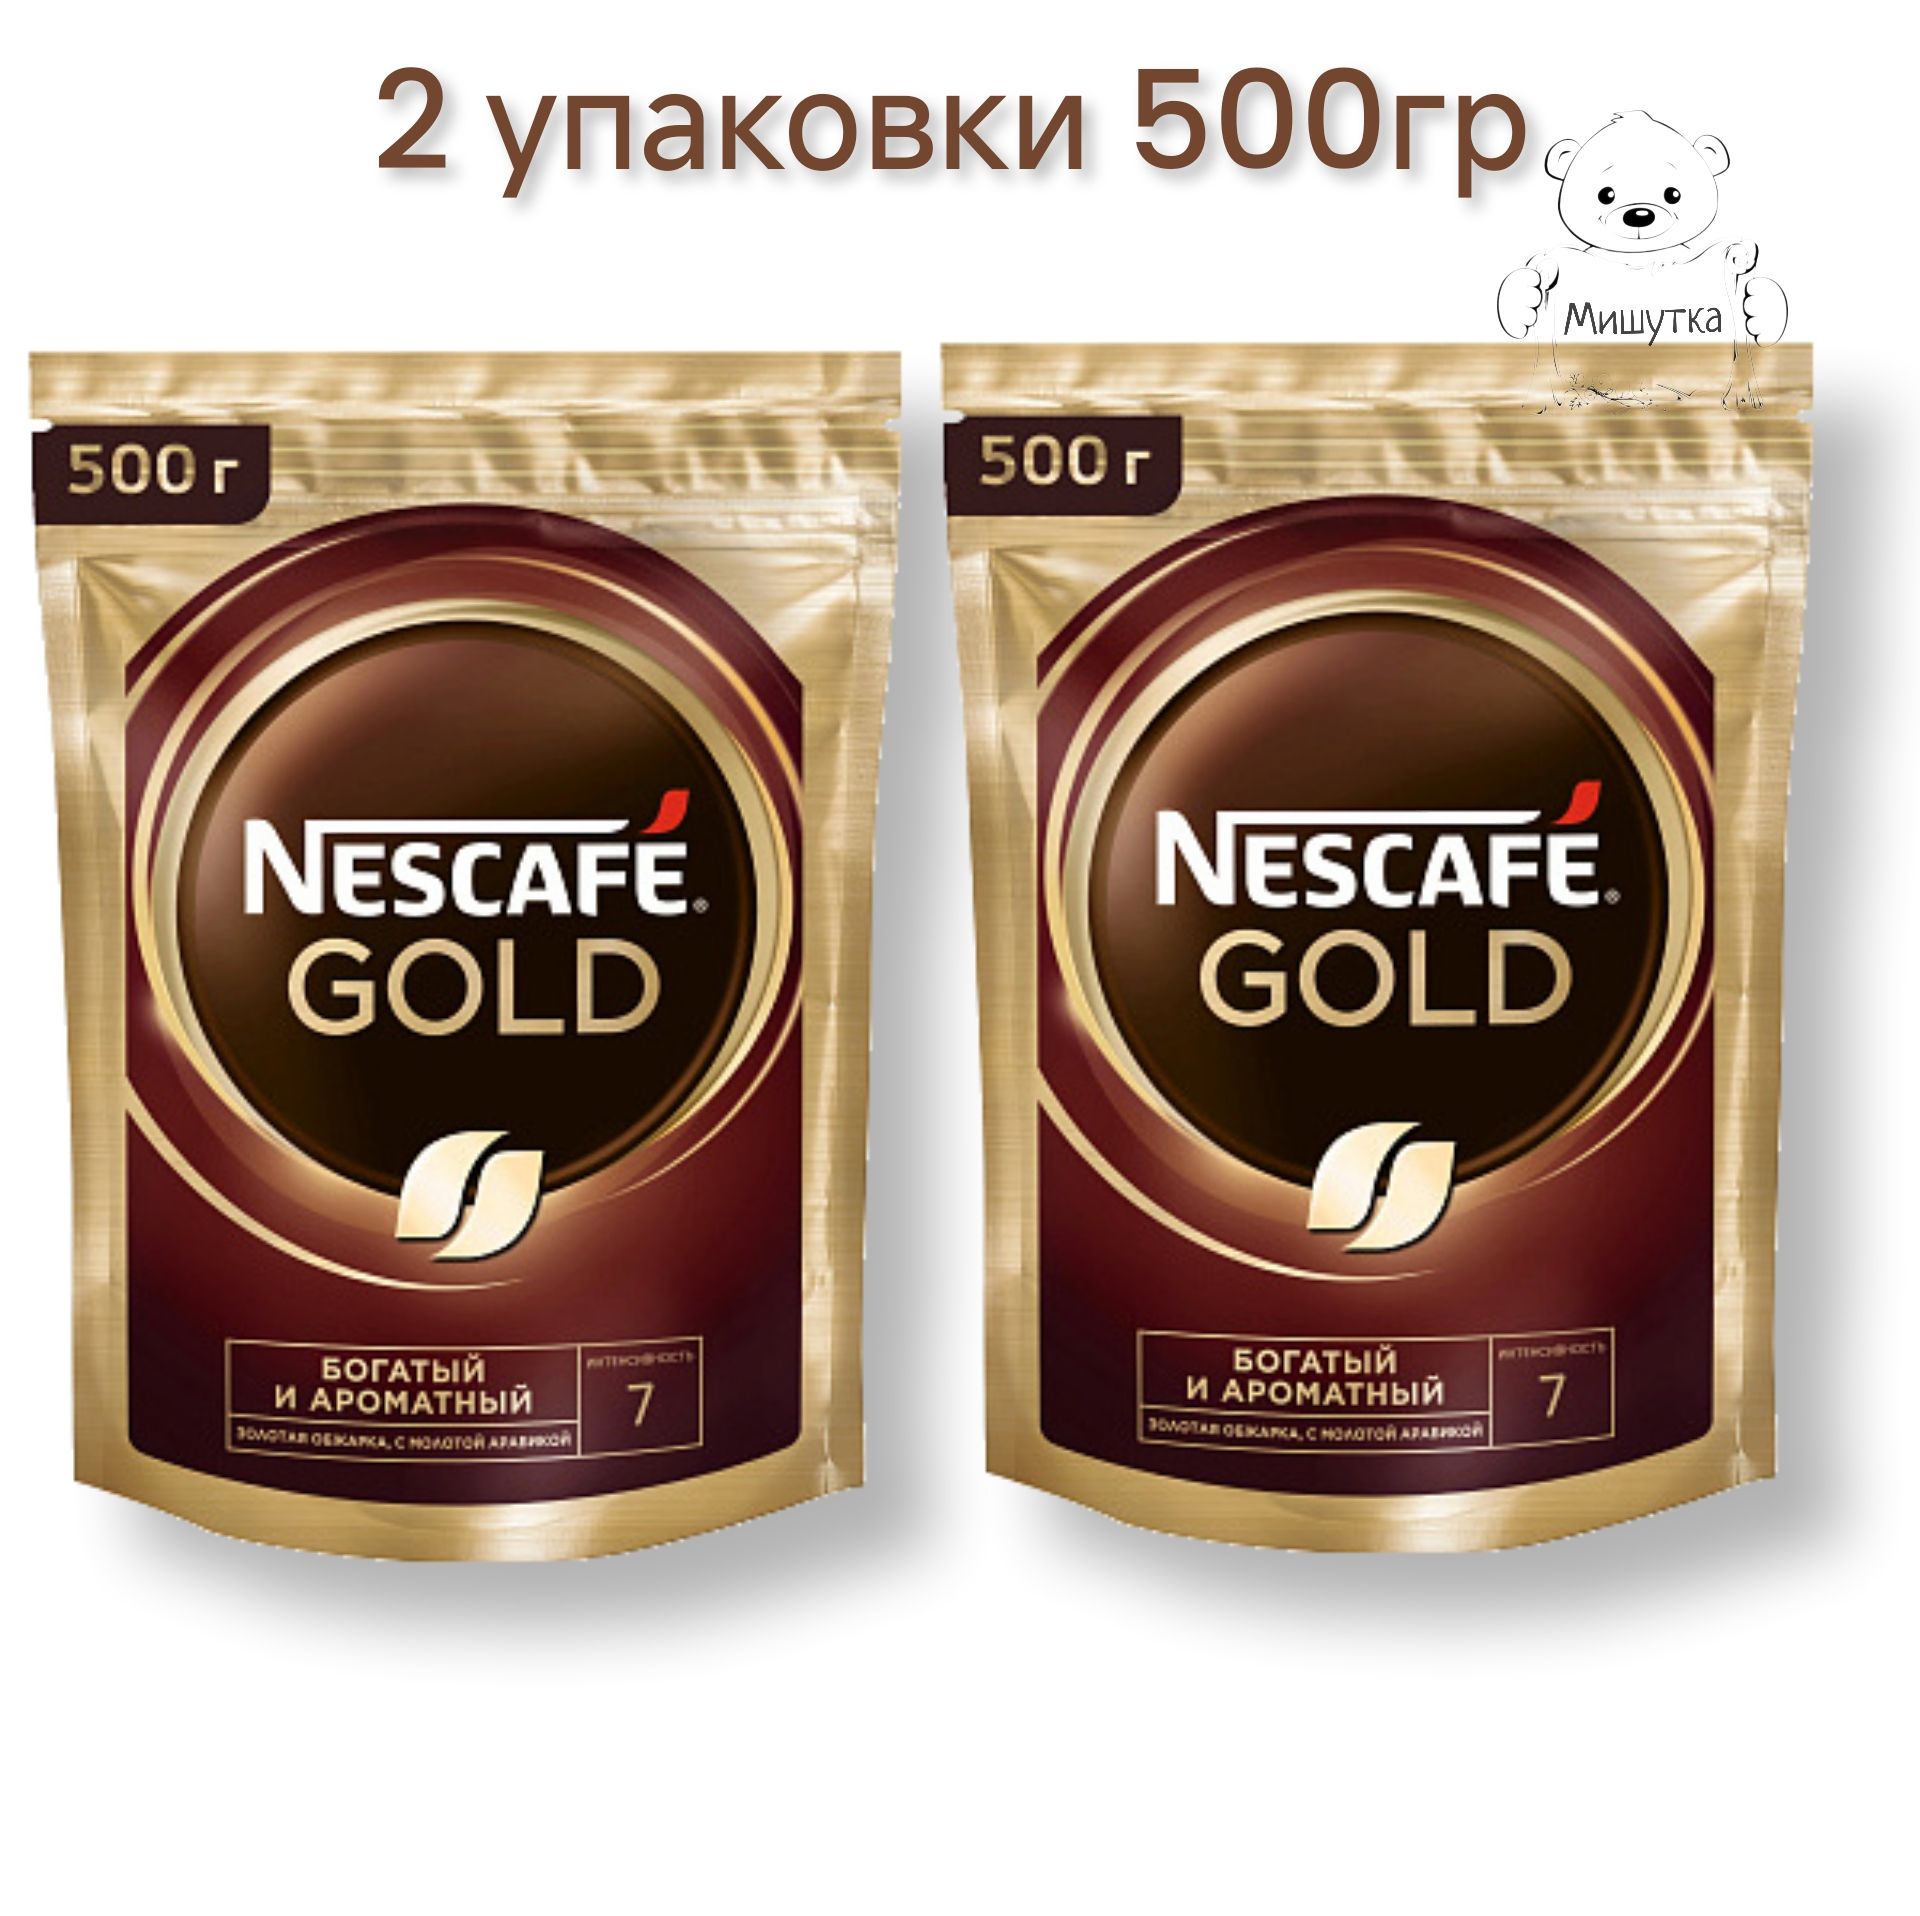 Кофе Нескафе Голд 220г пакет. Кофе Нескафе Голд 2гр/30. Nescafe Gold 220 г. Нескафе Голд 250 гр.